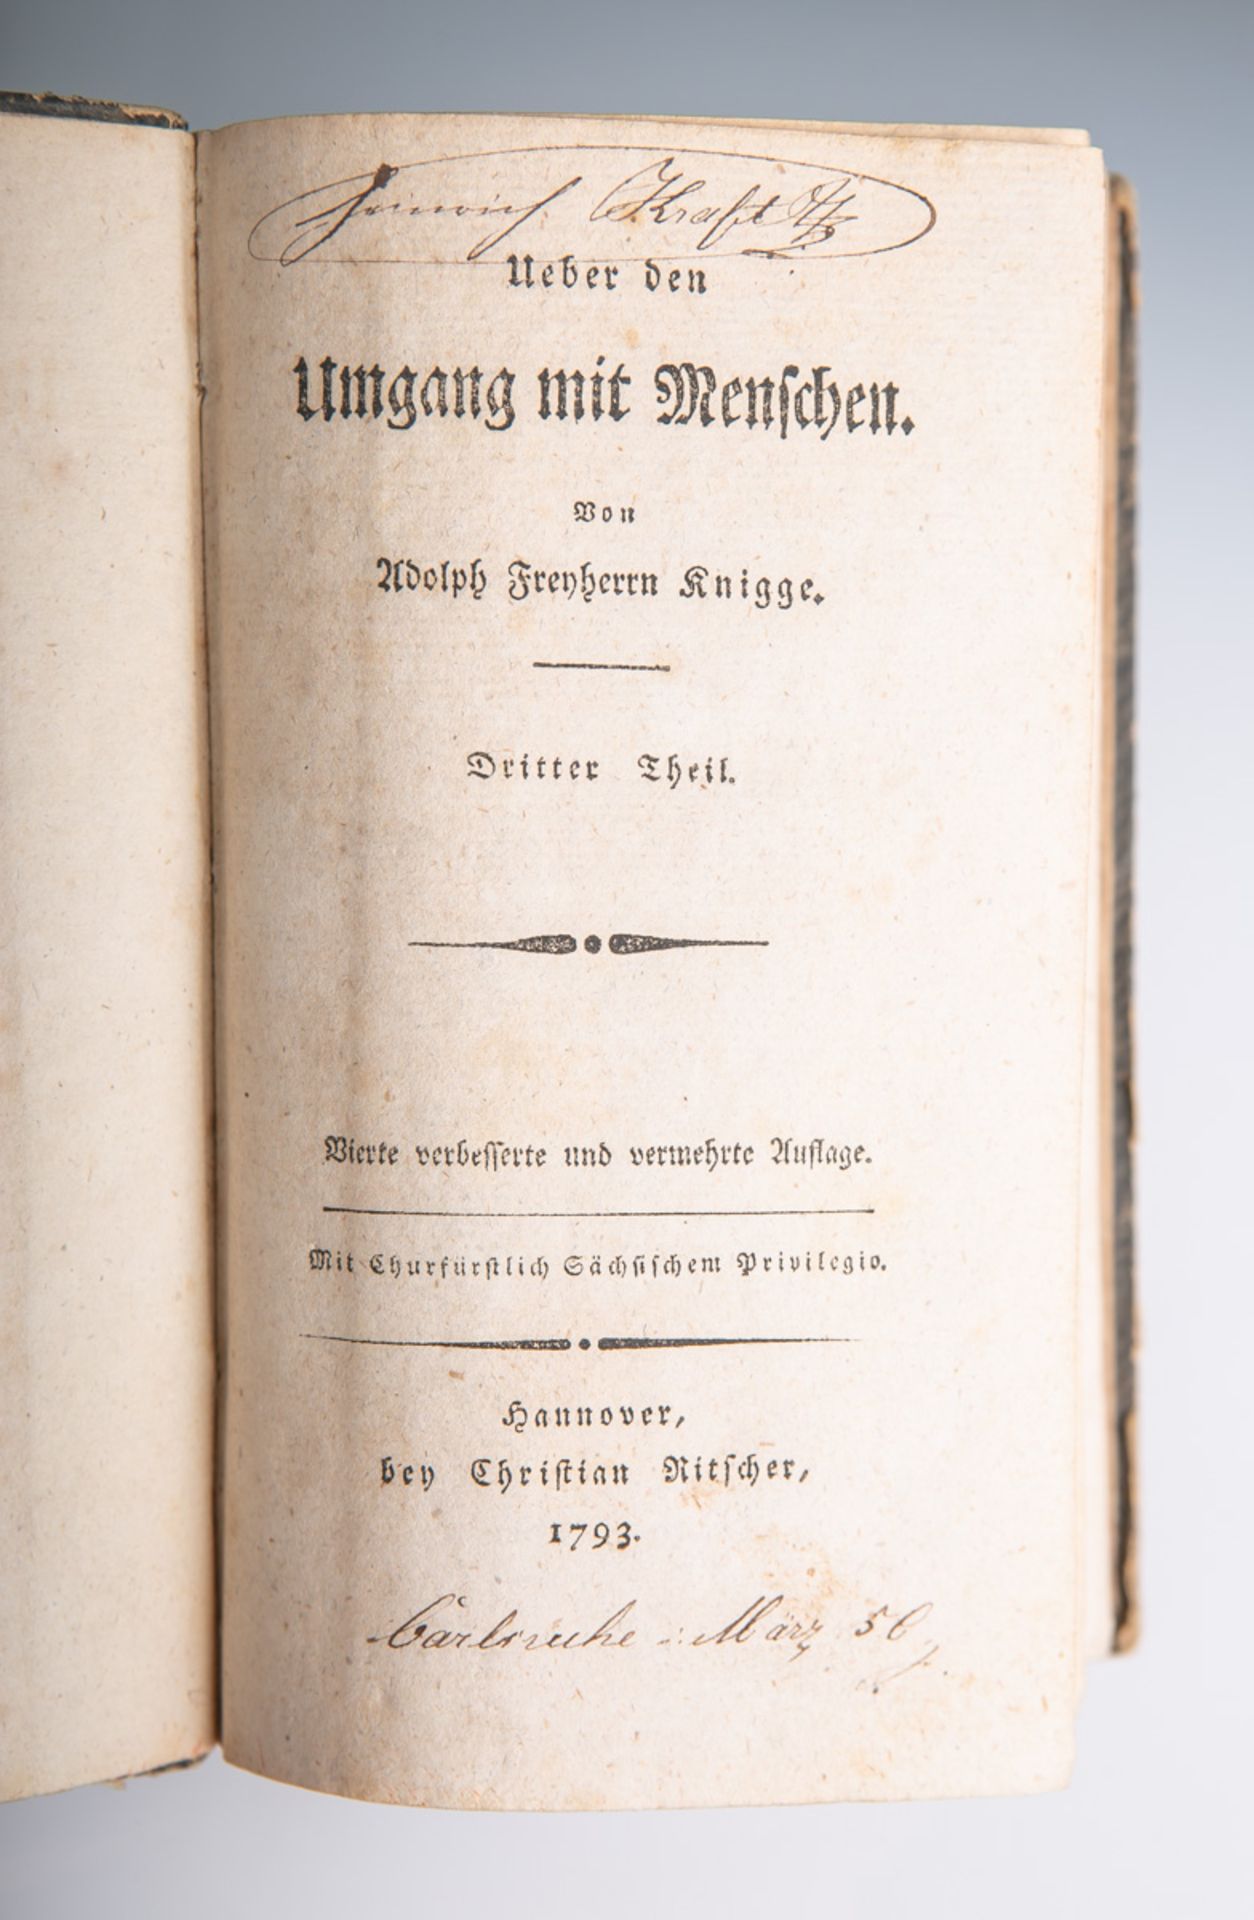 Knigge, Adolph Freyherrn, "Ueber den